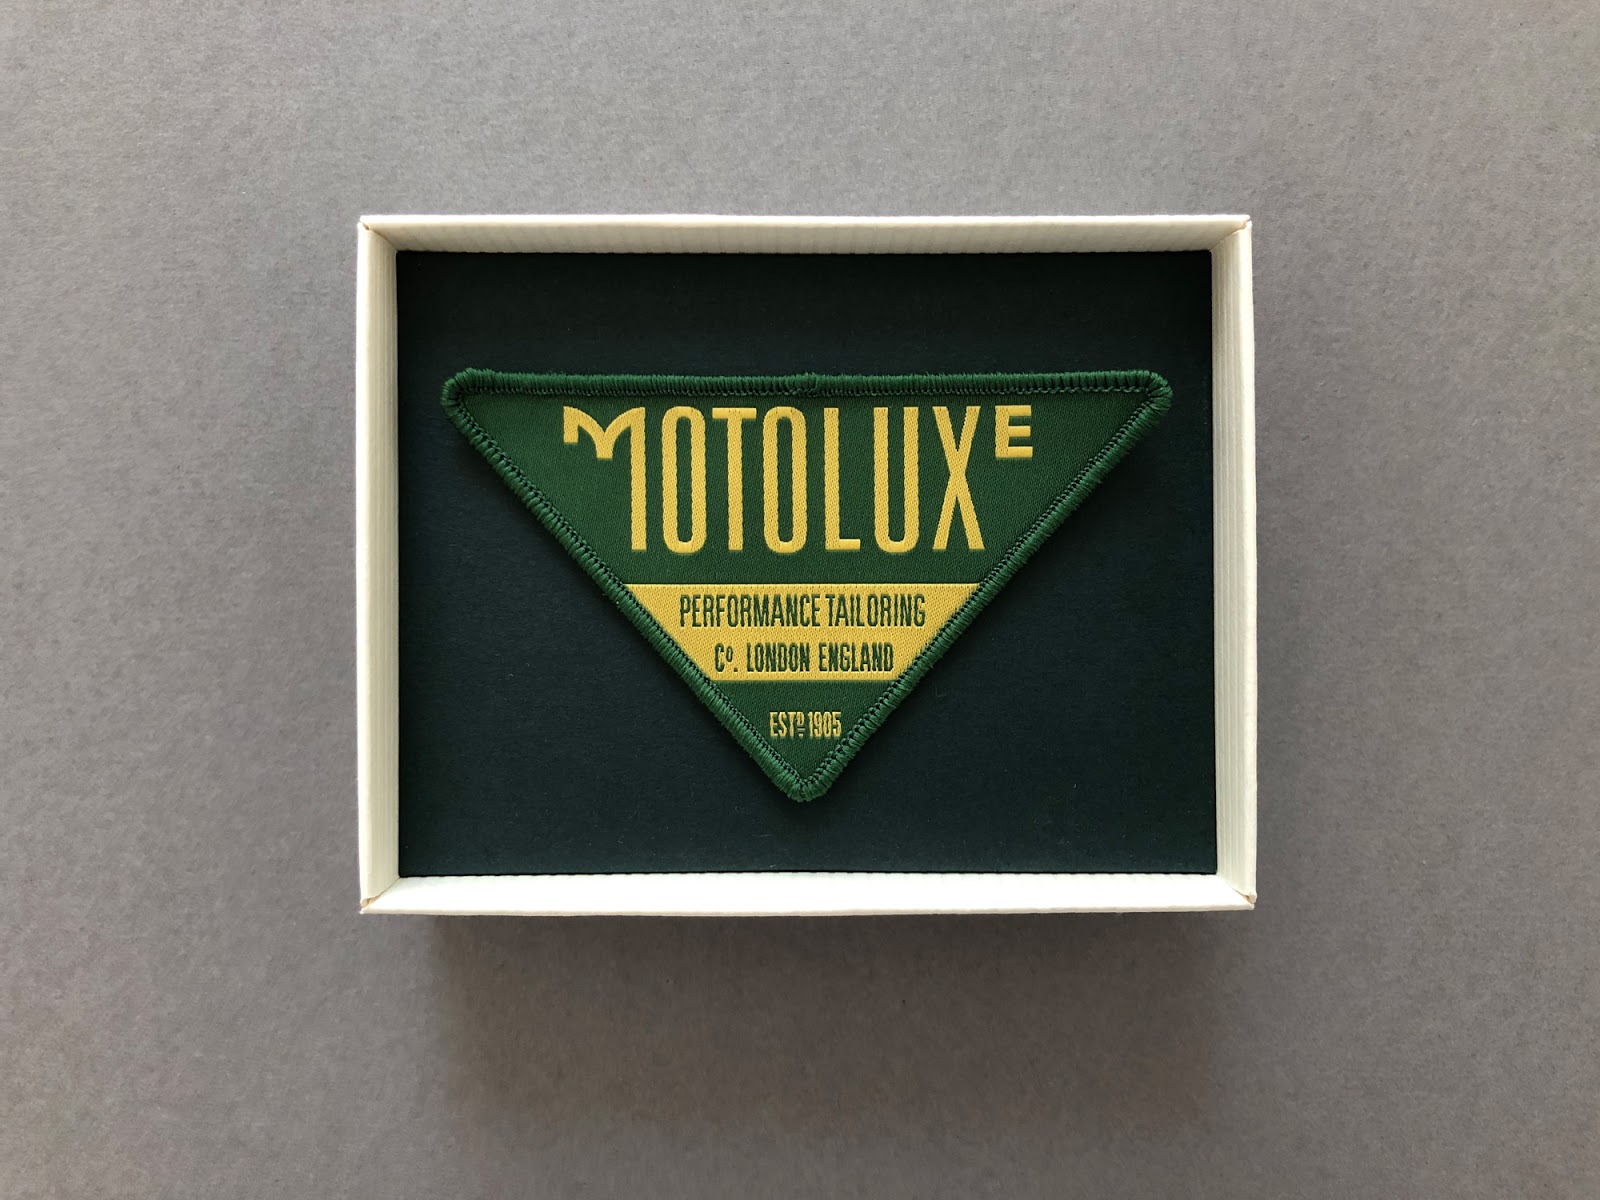 服饰品牌Motoluxe视觉形象设计